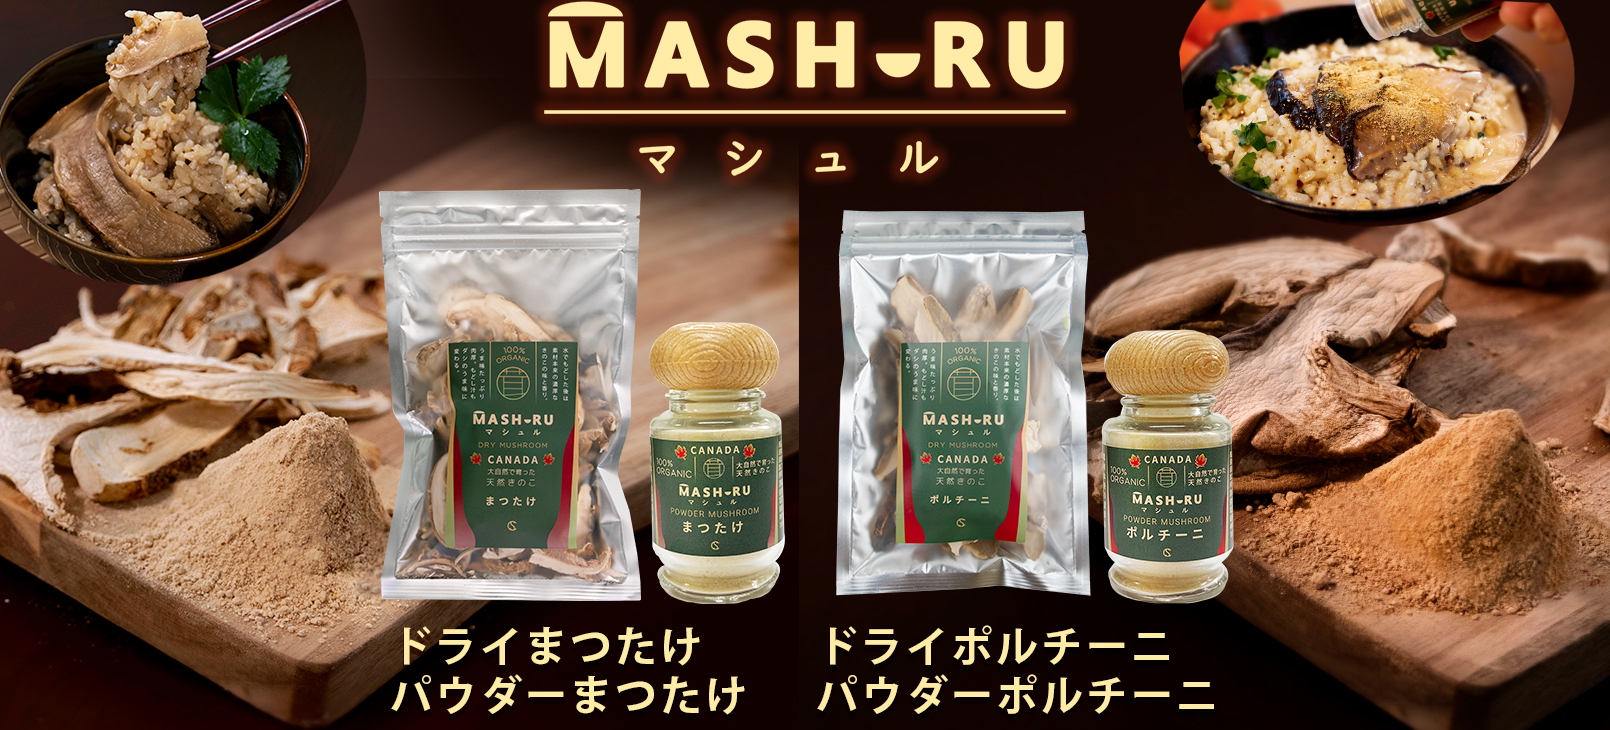 キュービックスクエア、
カナダの天然まつたけとポルチーニを
そのまま乾燥＆パウダーにした「マシュル(MASHURU)」を発売